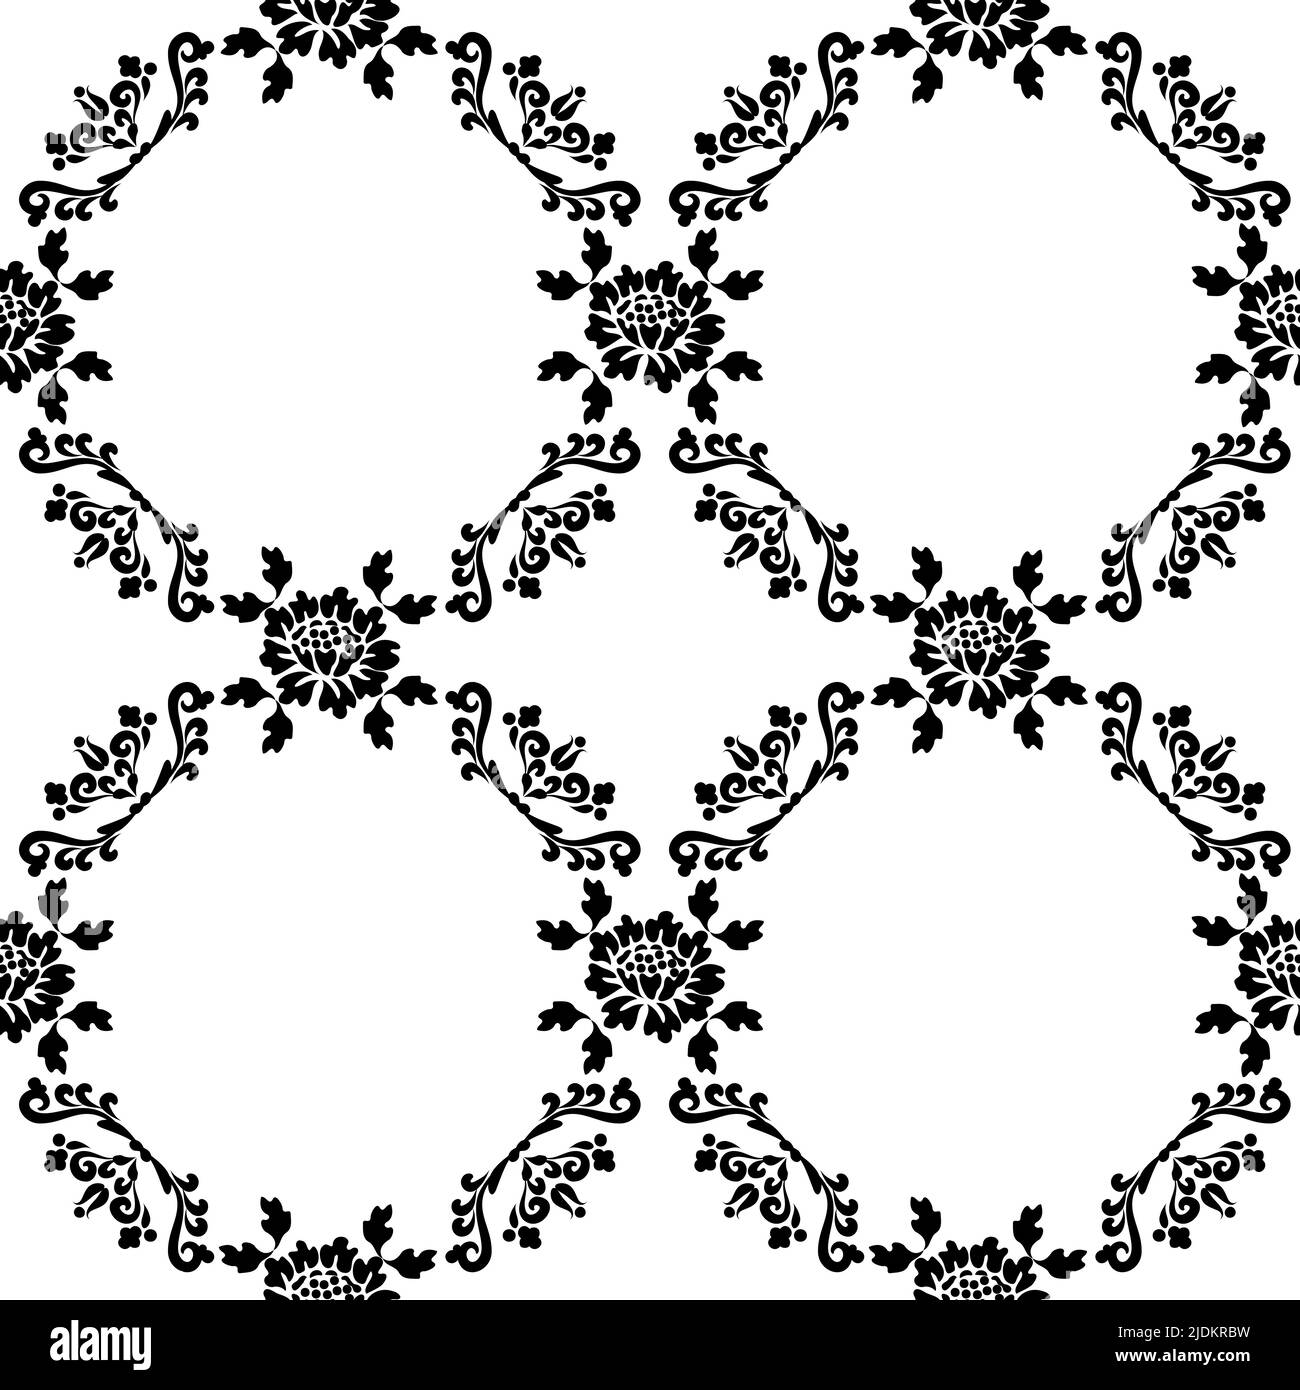 Hintergrund mit kreisförmigen Blumenmustern. Schwarzes Ornament. Vektor Blumenmuster für Stoff, Keramikfliesen oder Geschenkpapier Design. Stock Vektor